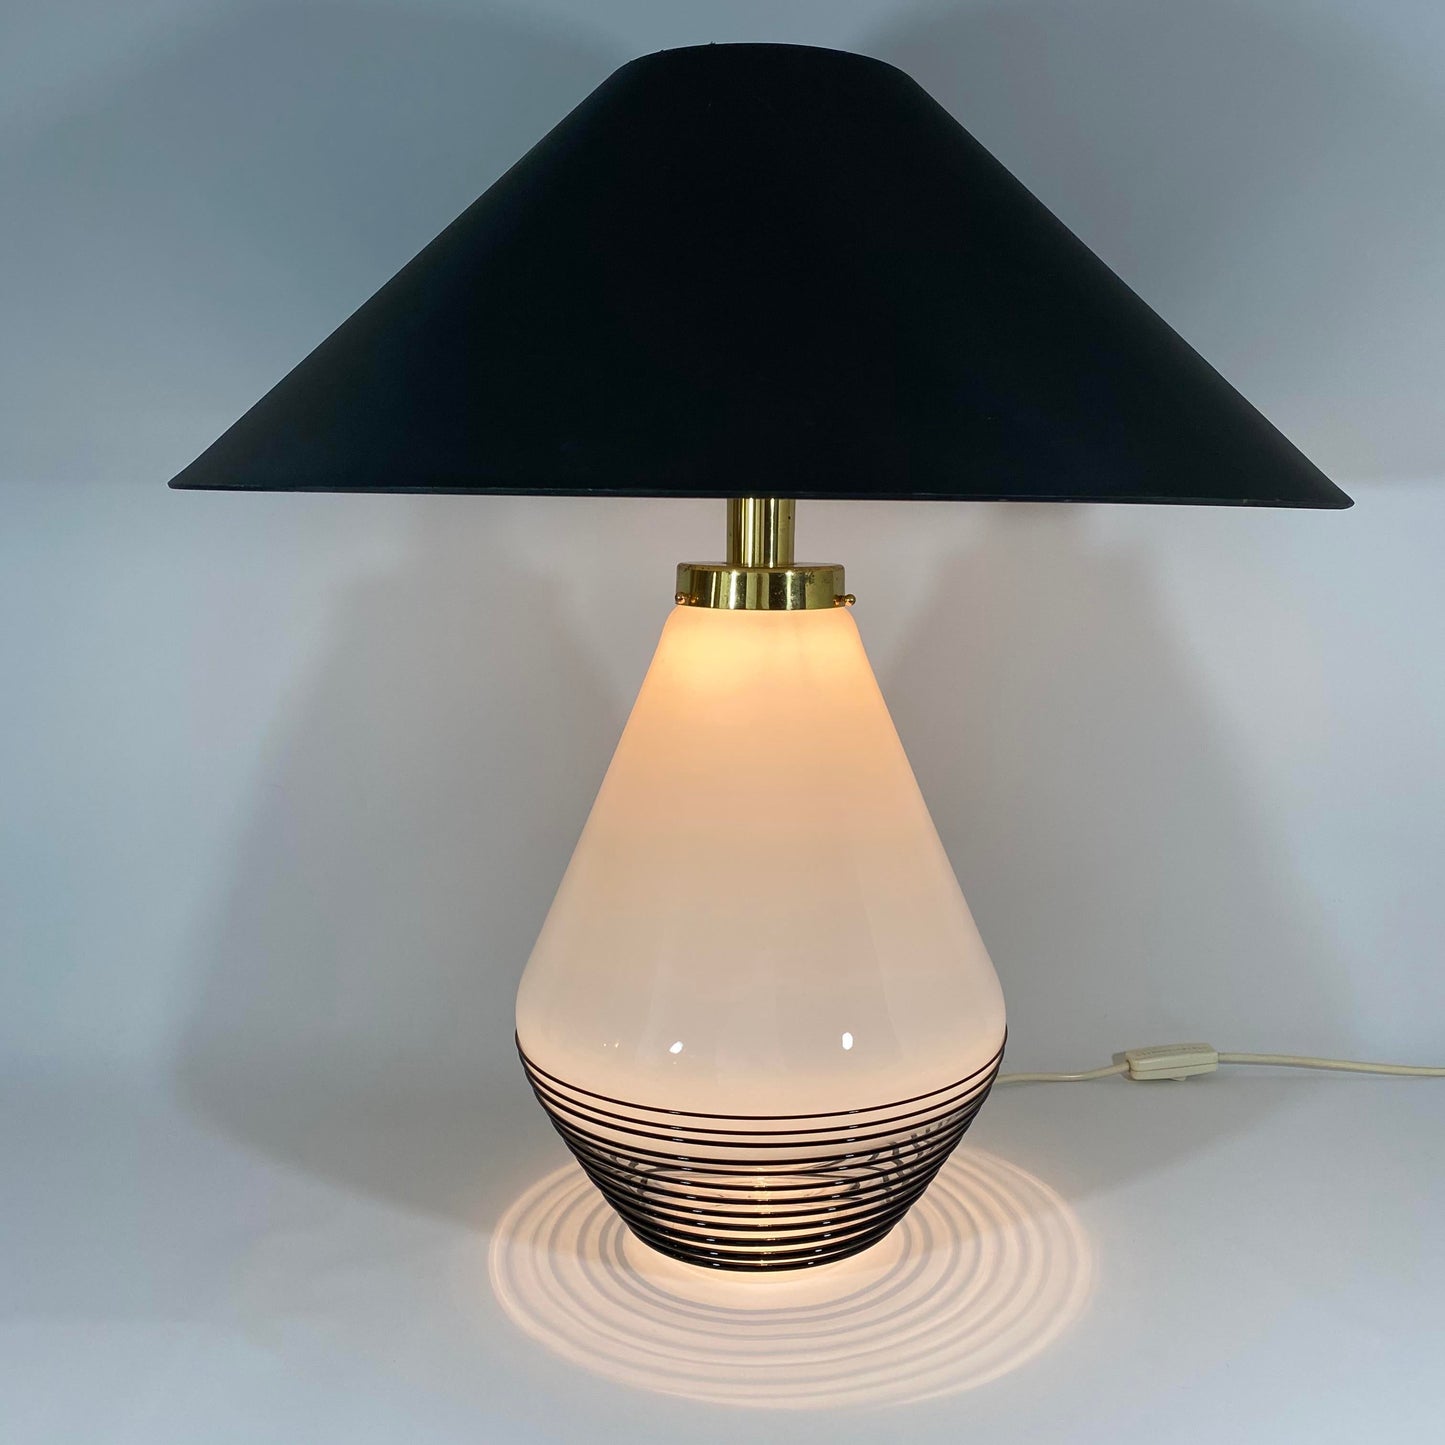 Lino Tagliapietra Attributed Murano Glass Table Lamp by La Murrina